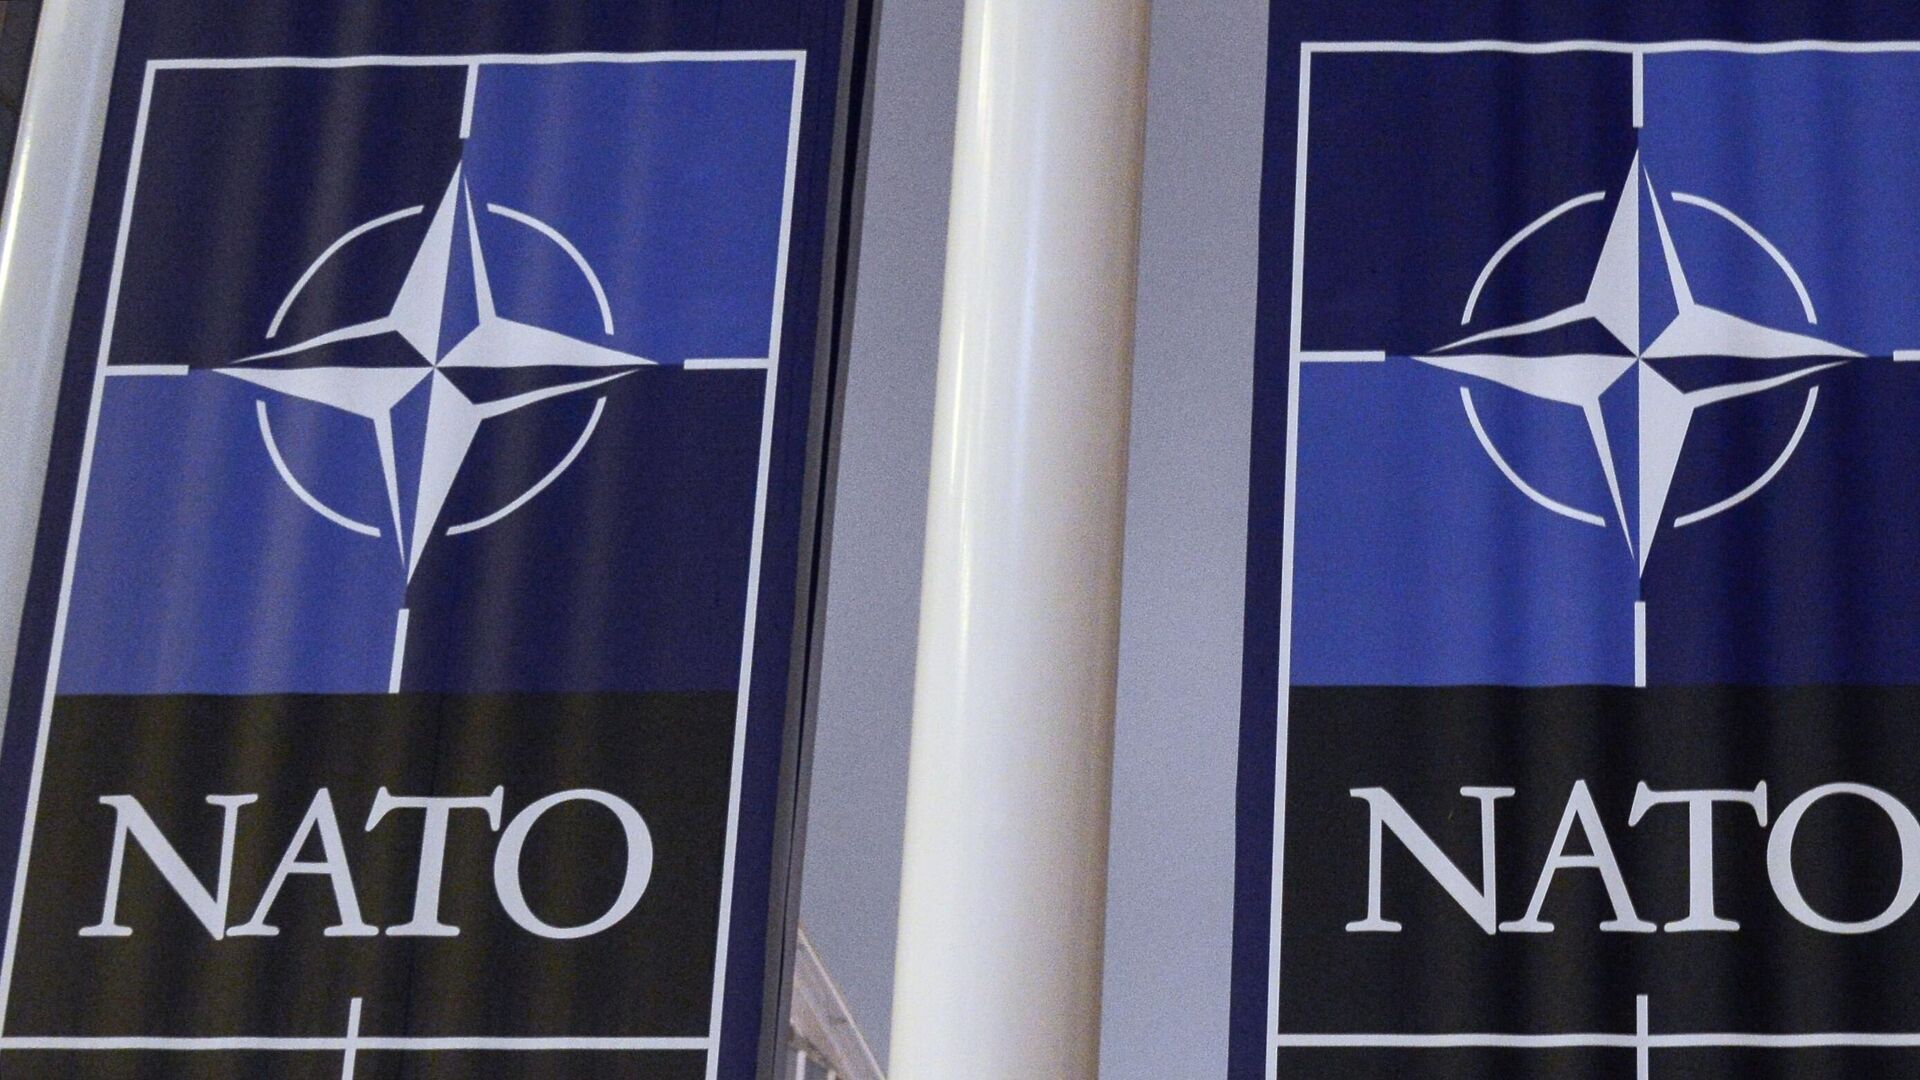 НАТО проведет ядерные учения в 600 милях от России